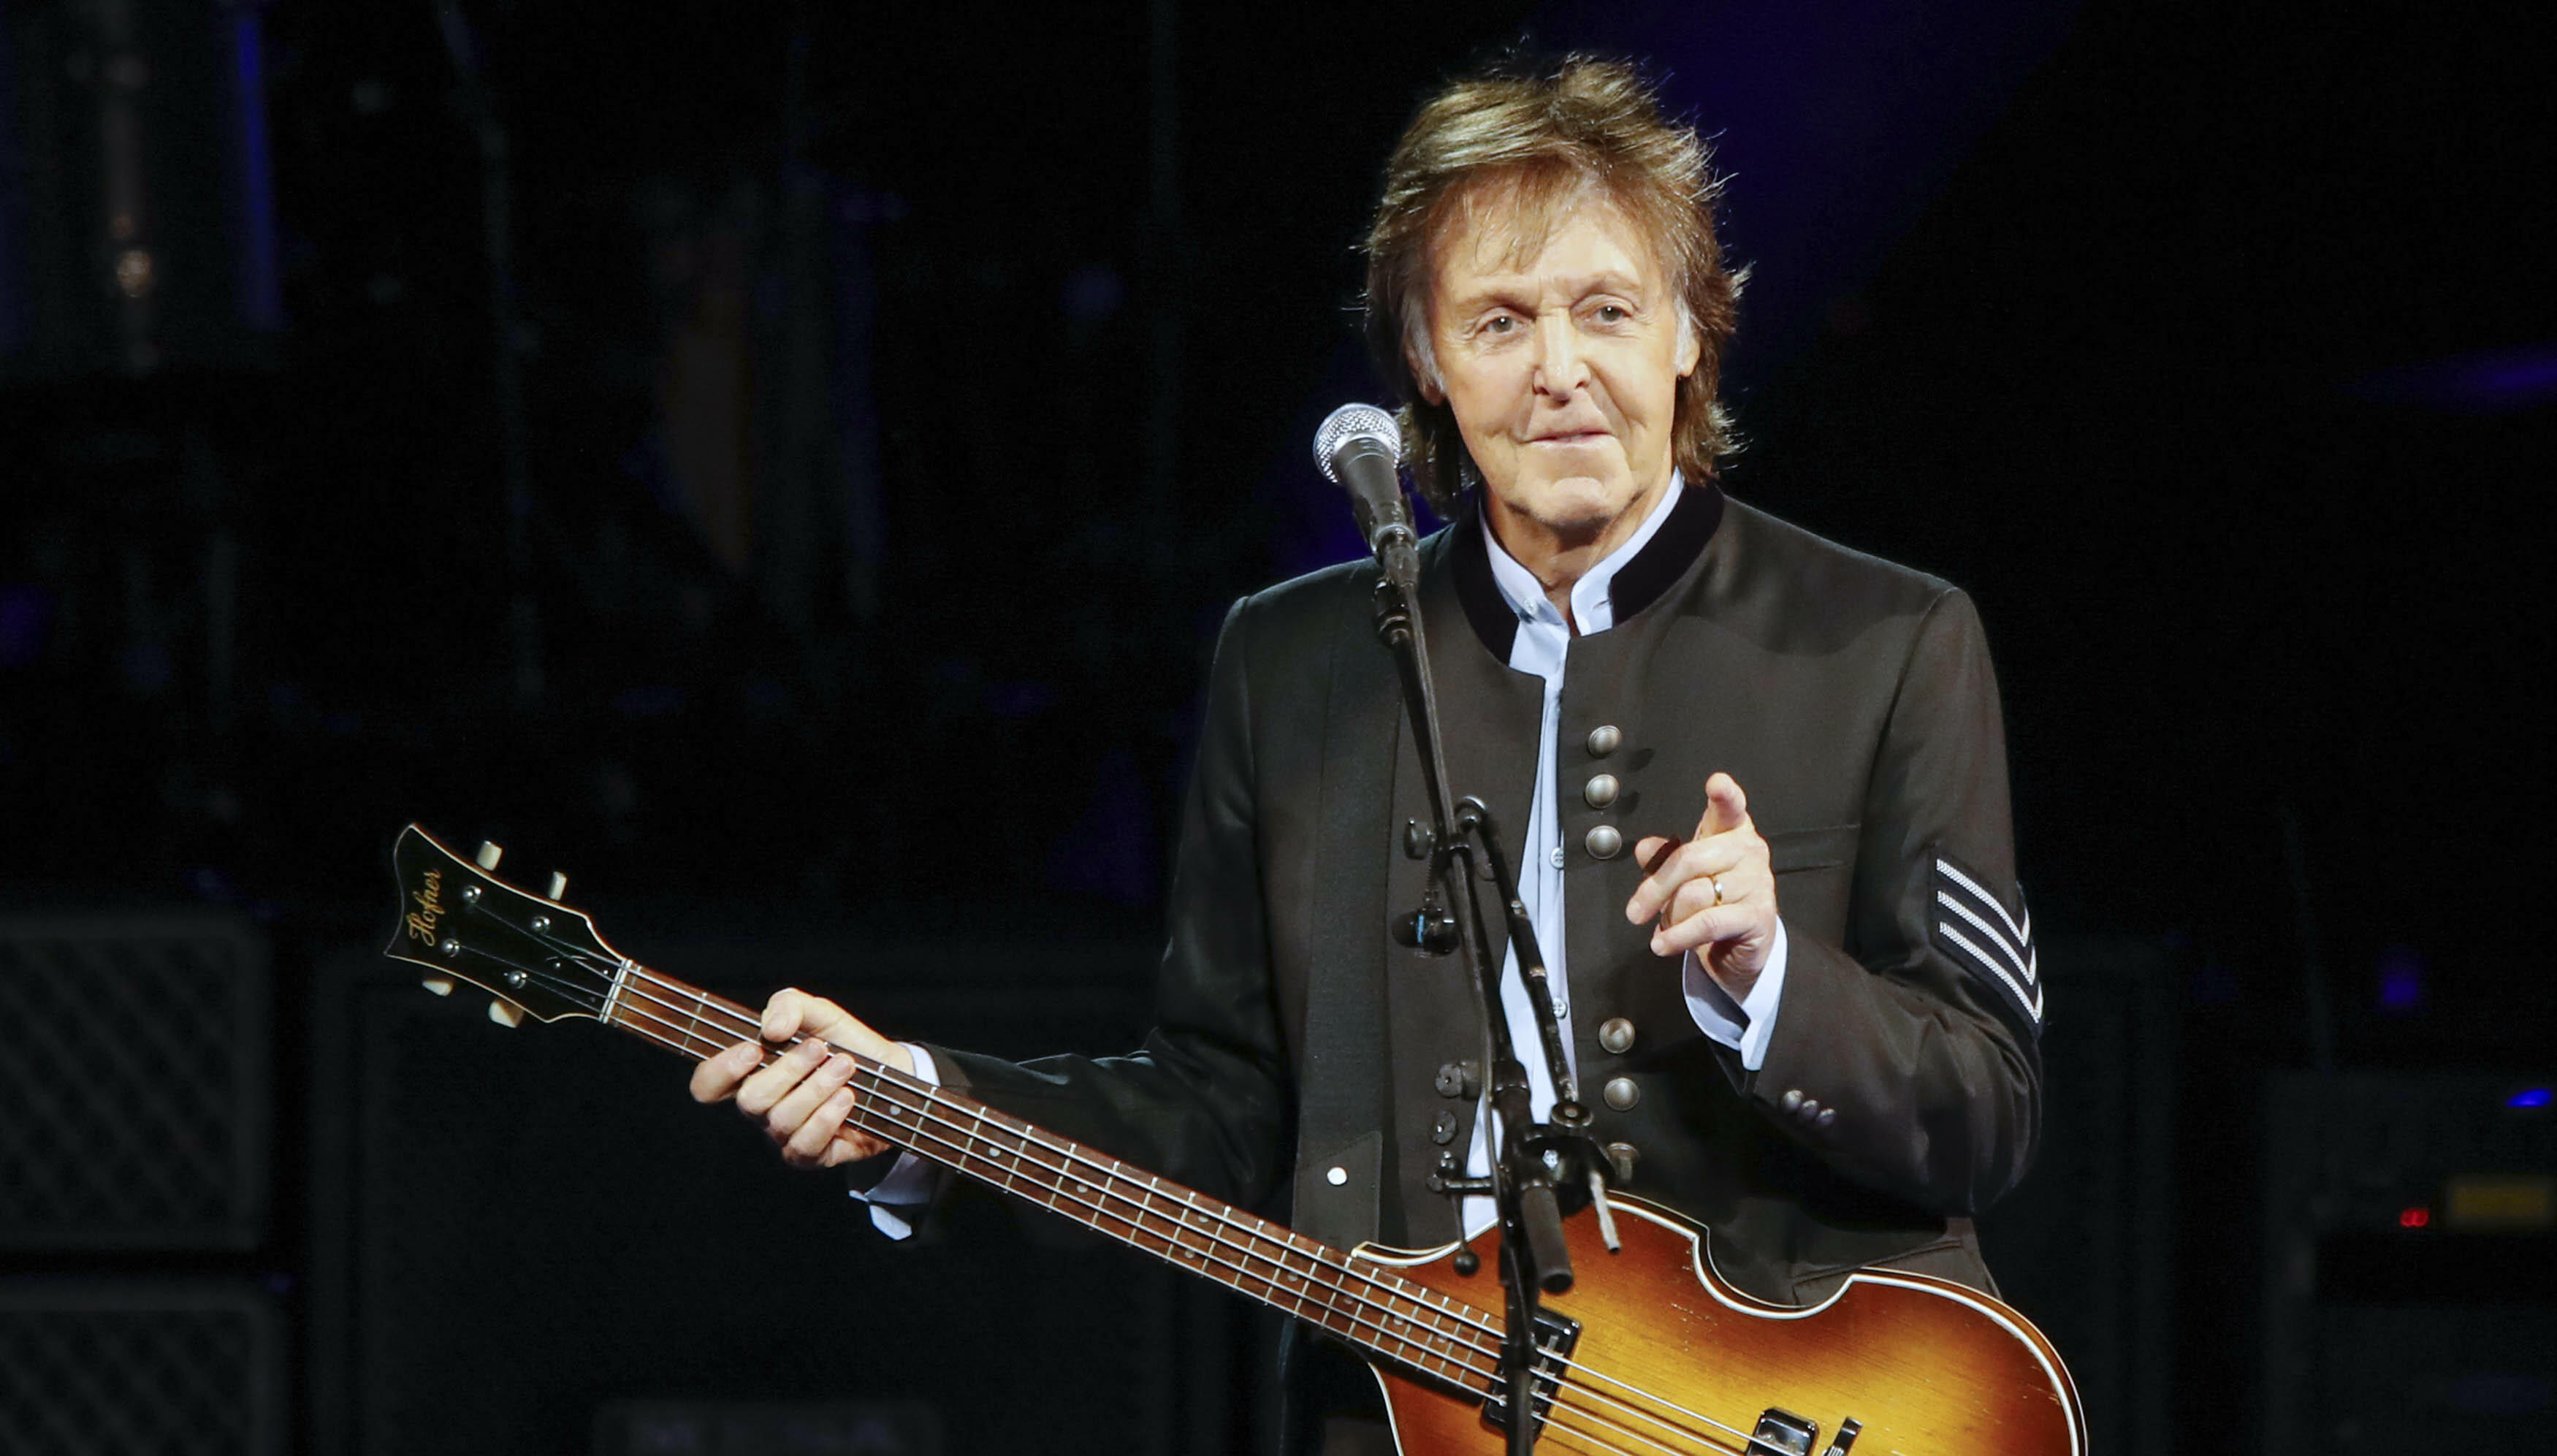 Paul McCartney Nears $1 Billion In Solo Touring Revenue | iHeart